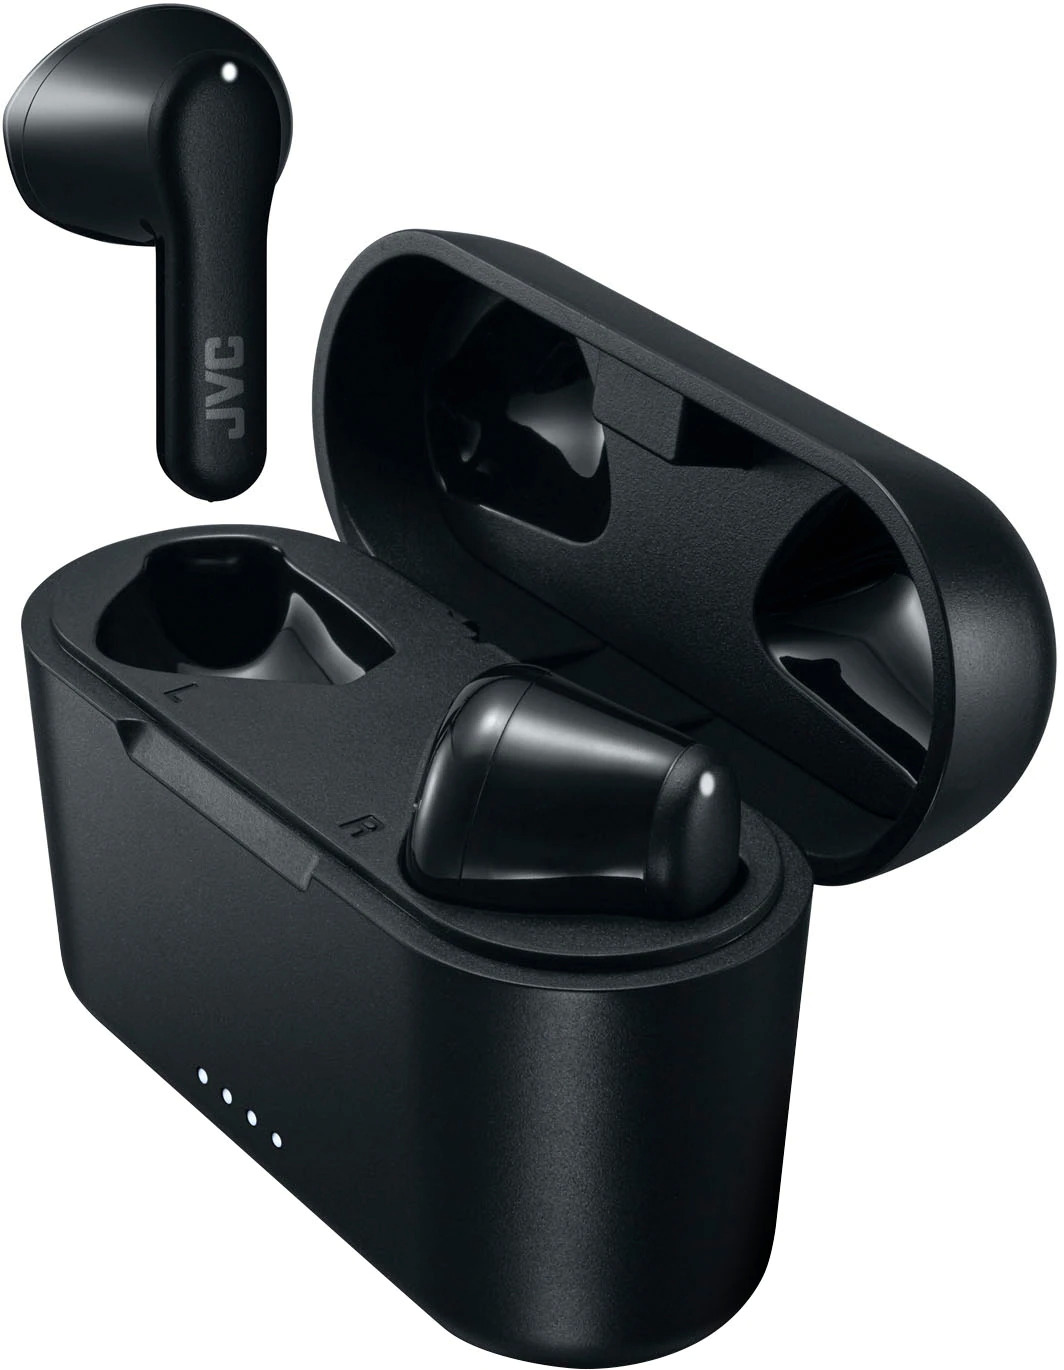 JVC True Wireless Earbuds - Best Buy/Amazon $13.99